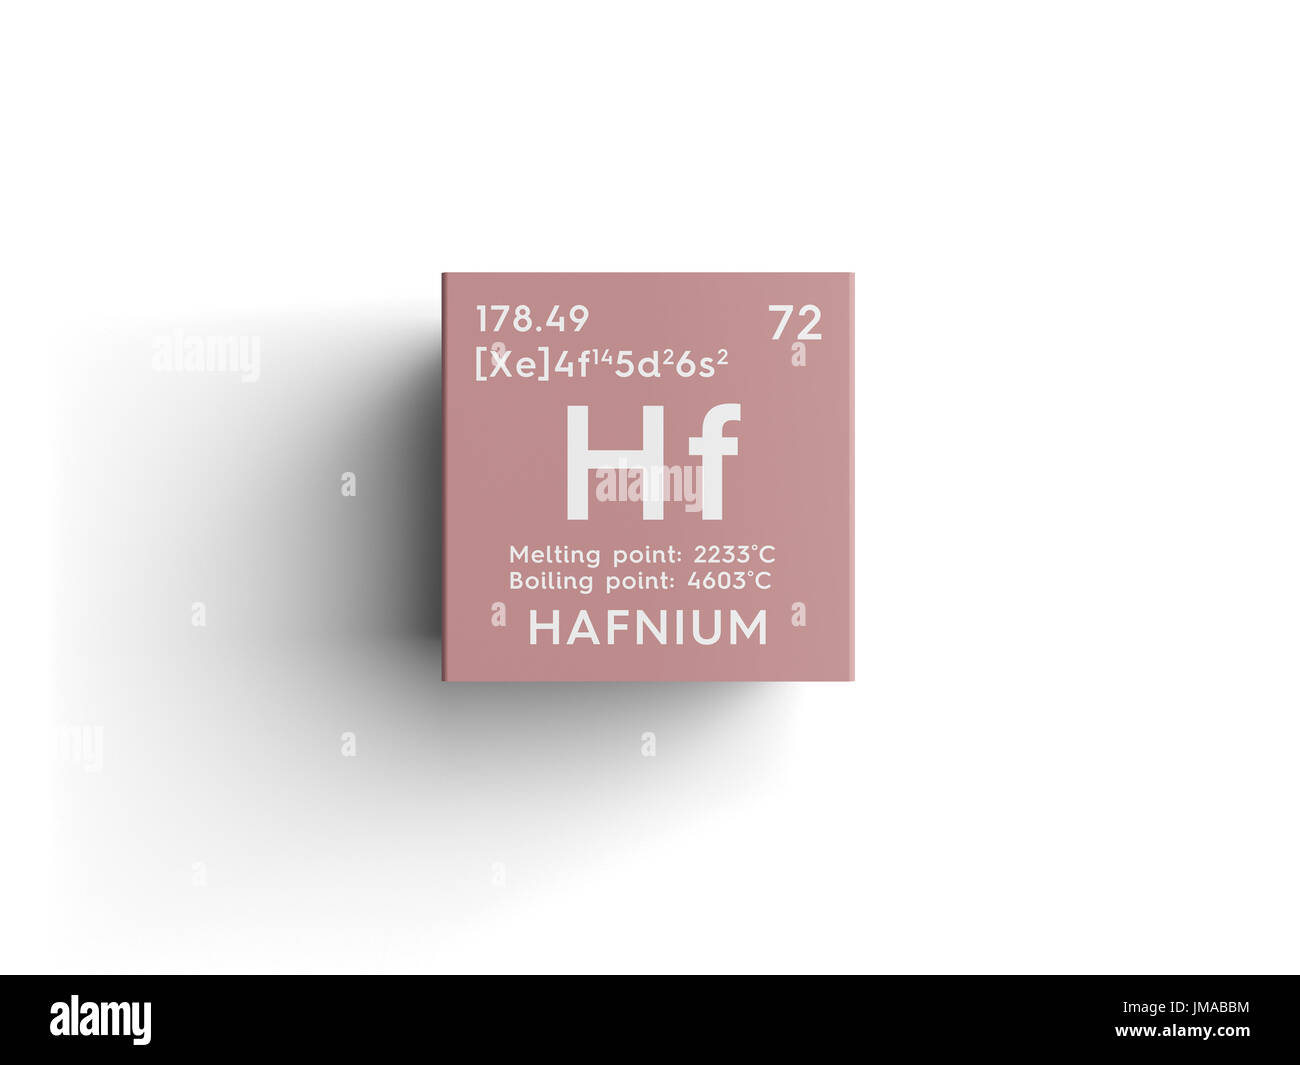 Hafnium. Transition metals. Chemical Element of Mendeleev's Periodic Table. Hafnium in square cube creative concept. Stock Photo